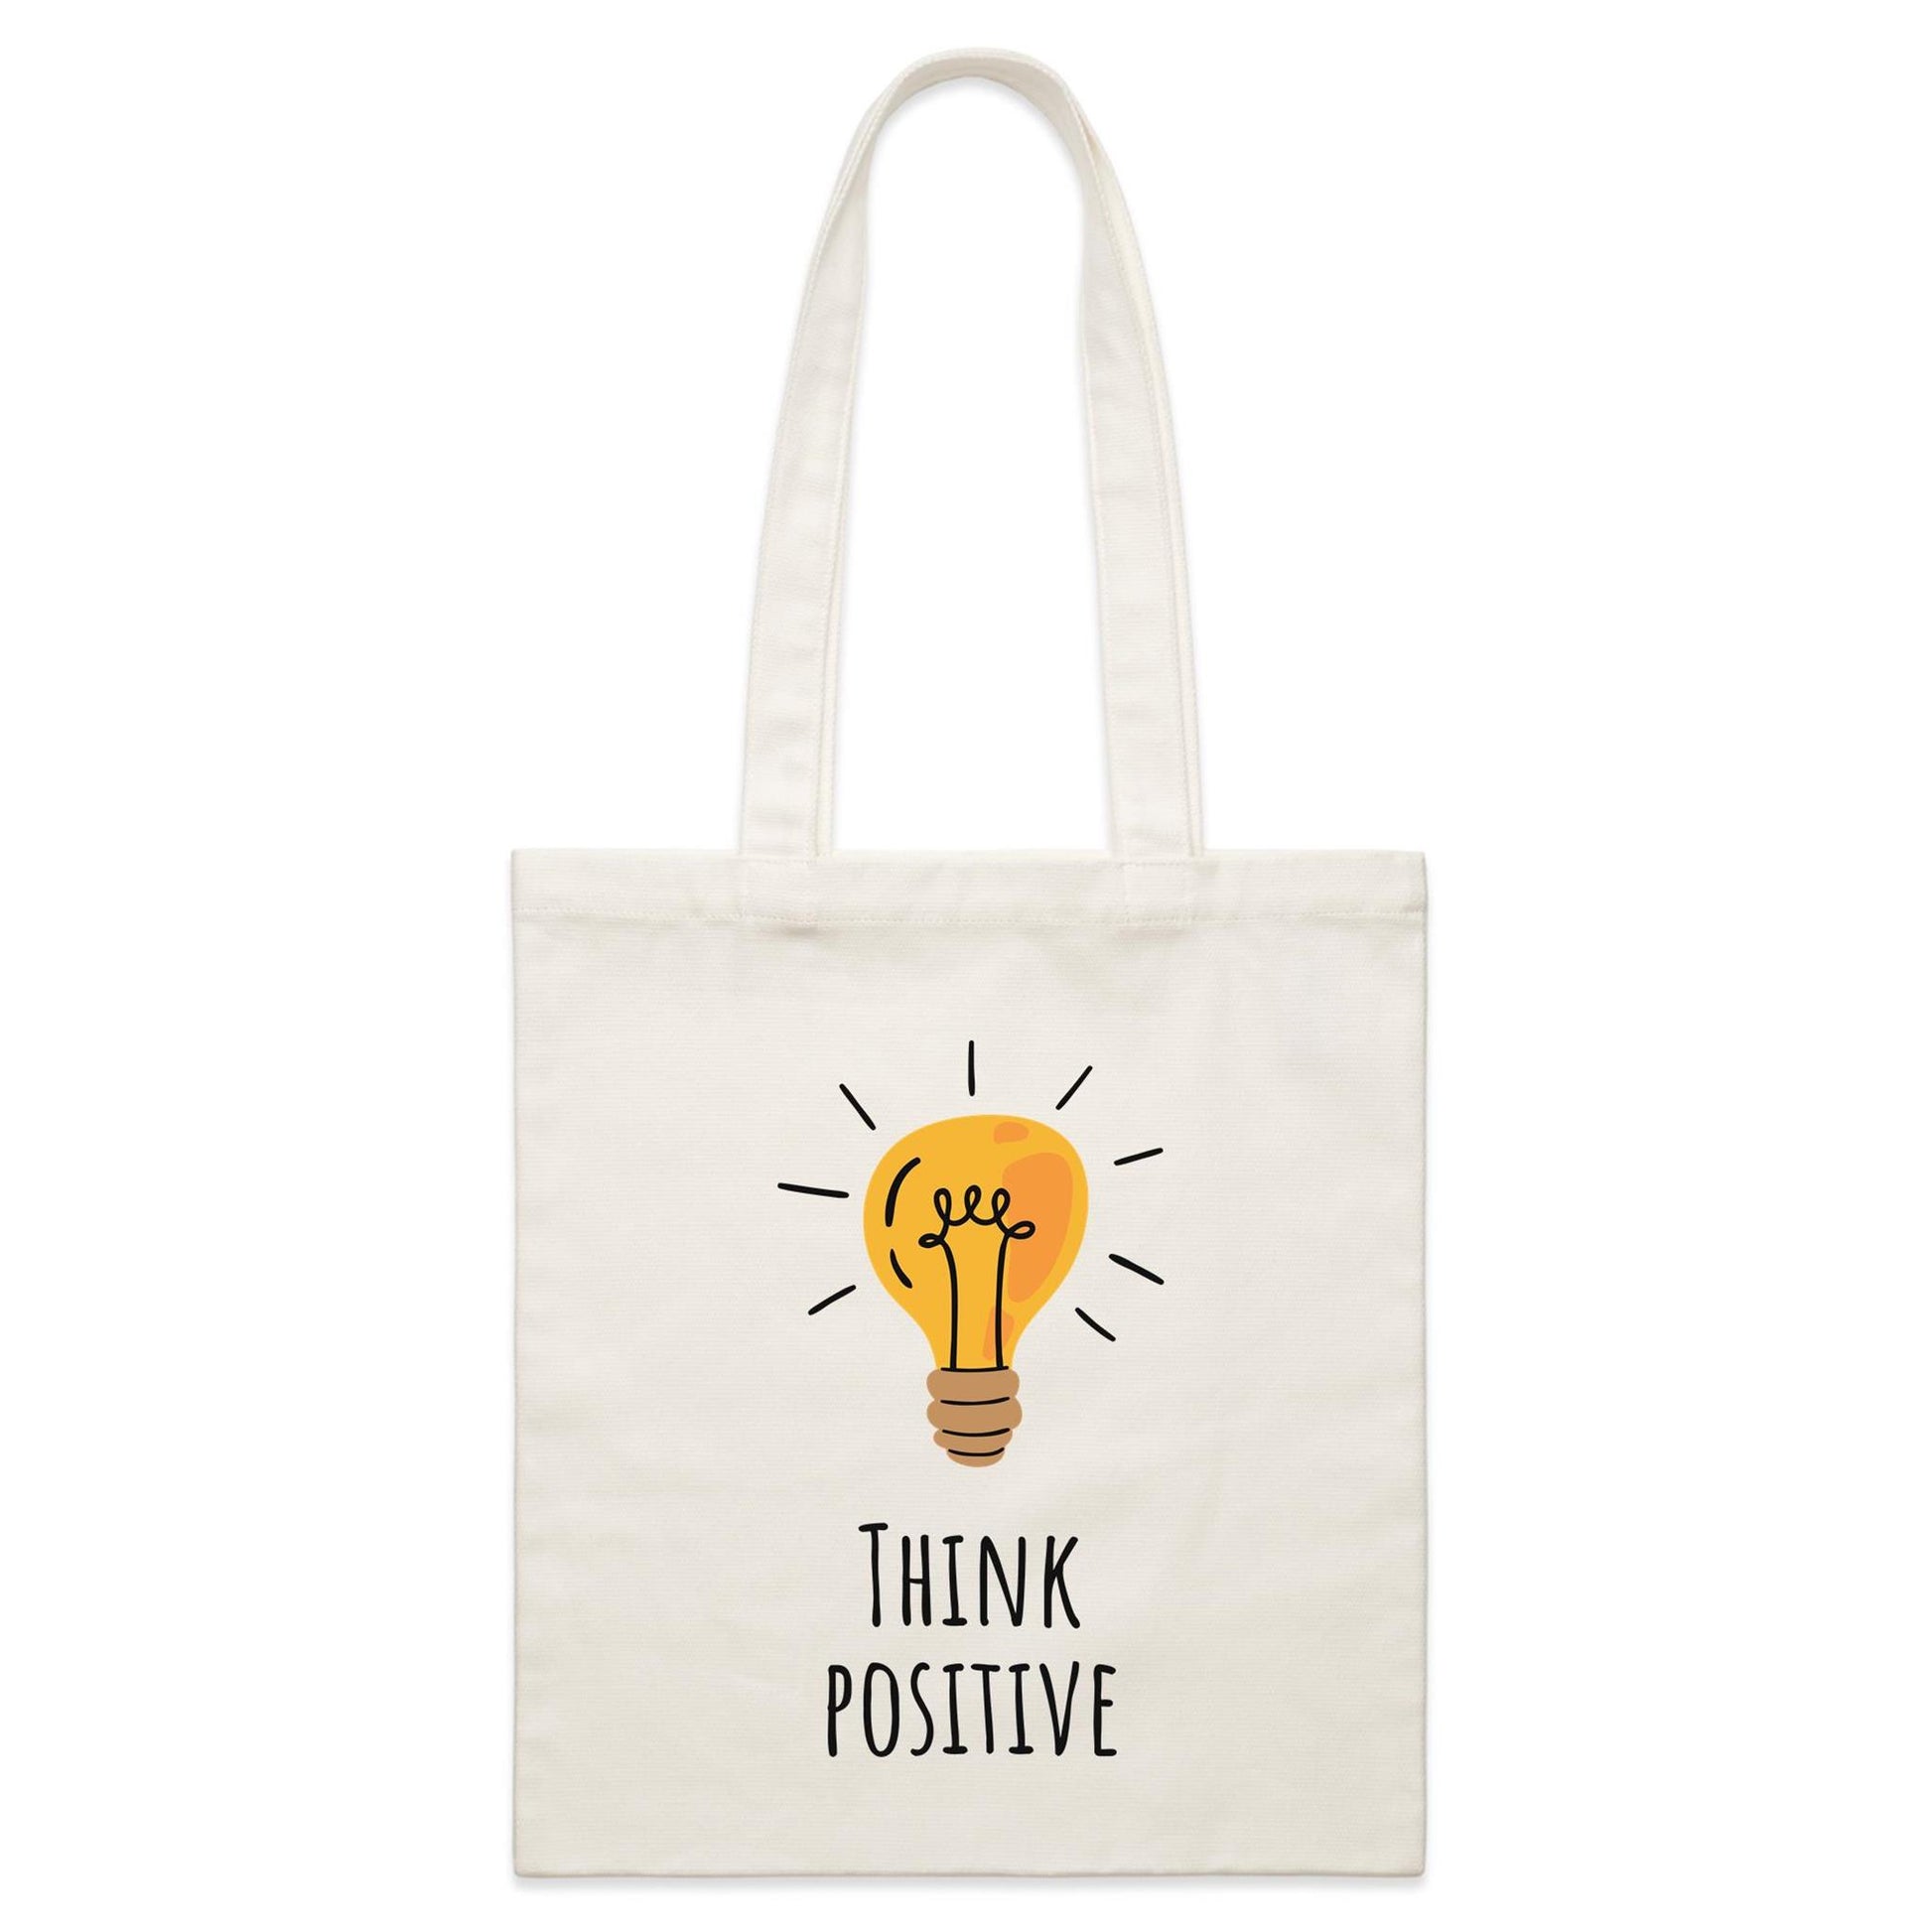 Think Positive - Parcel Canvas Tote Bag Default Title Parcel Tote Bag